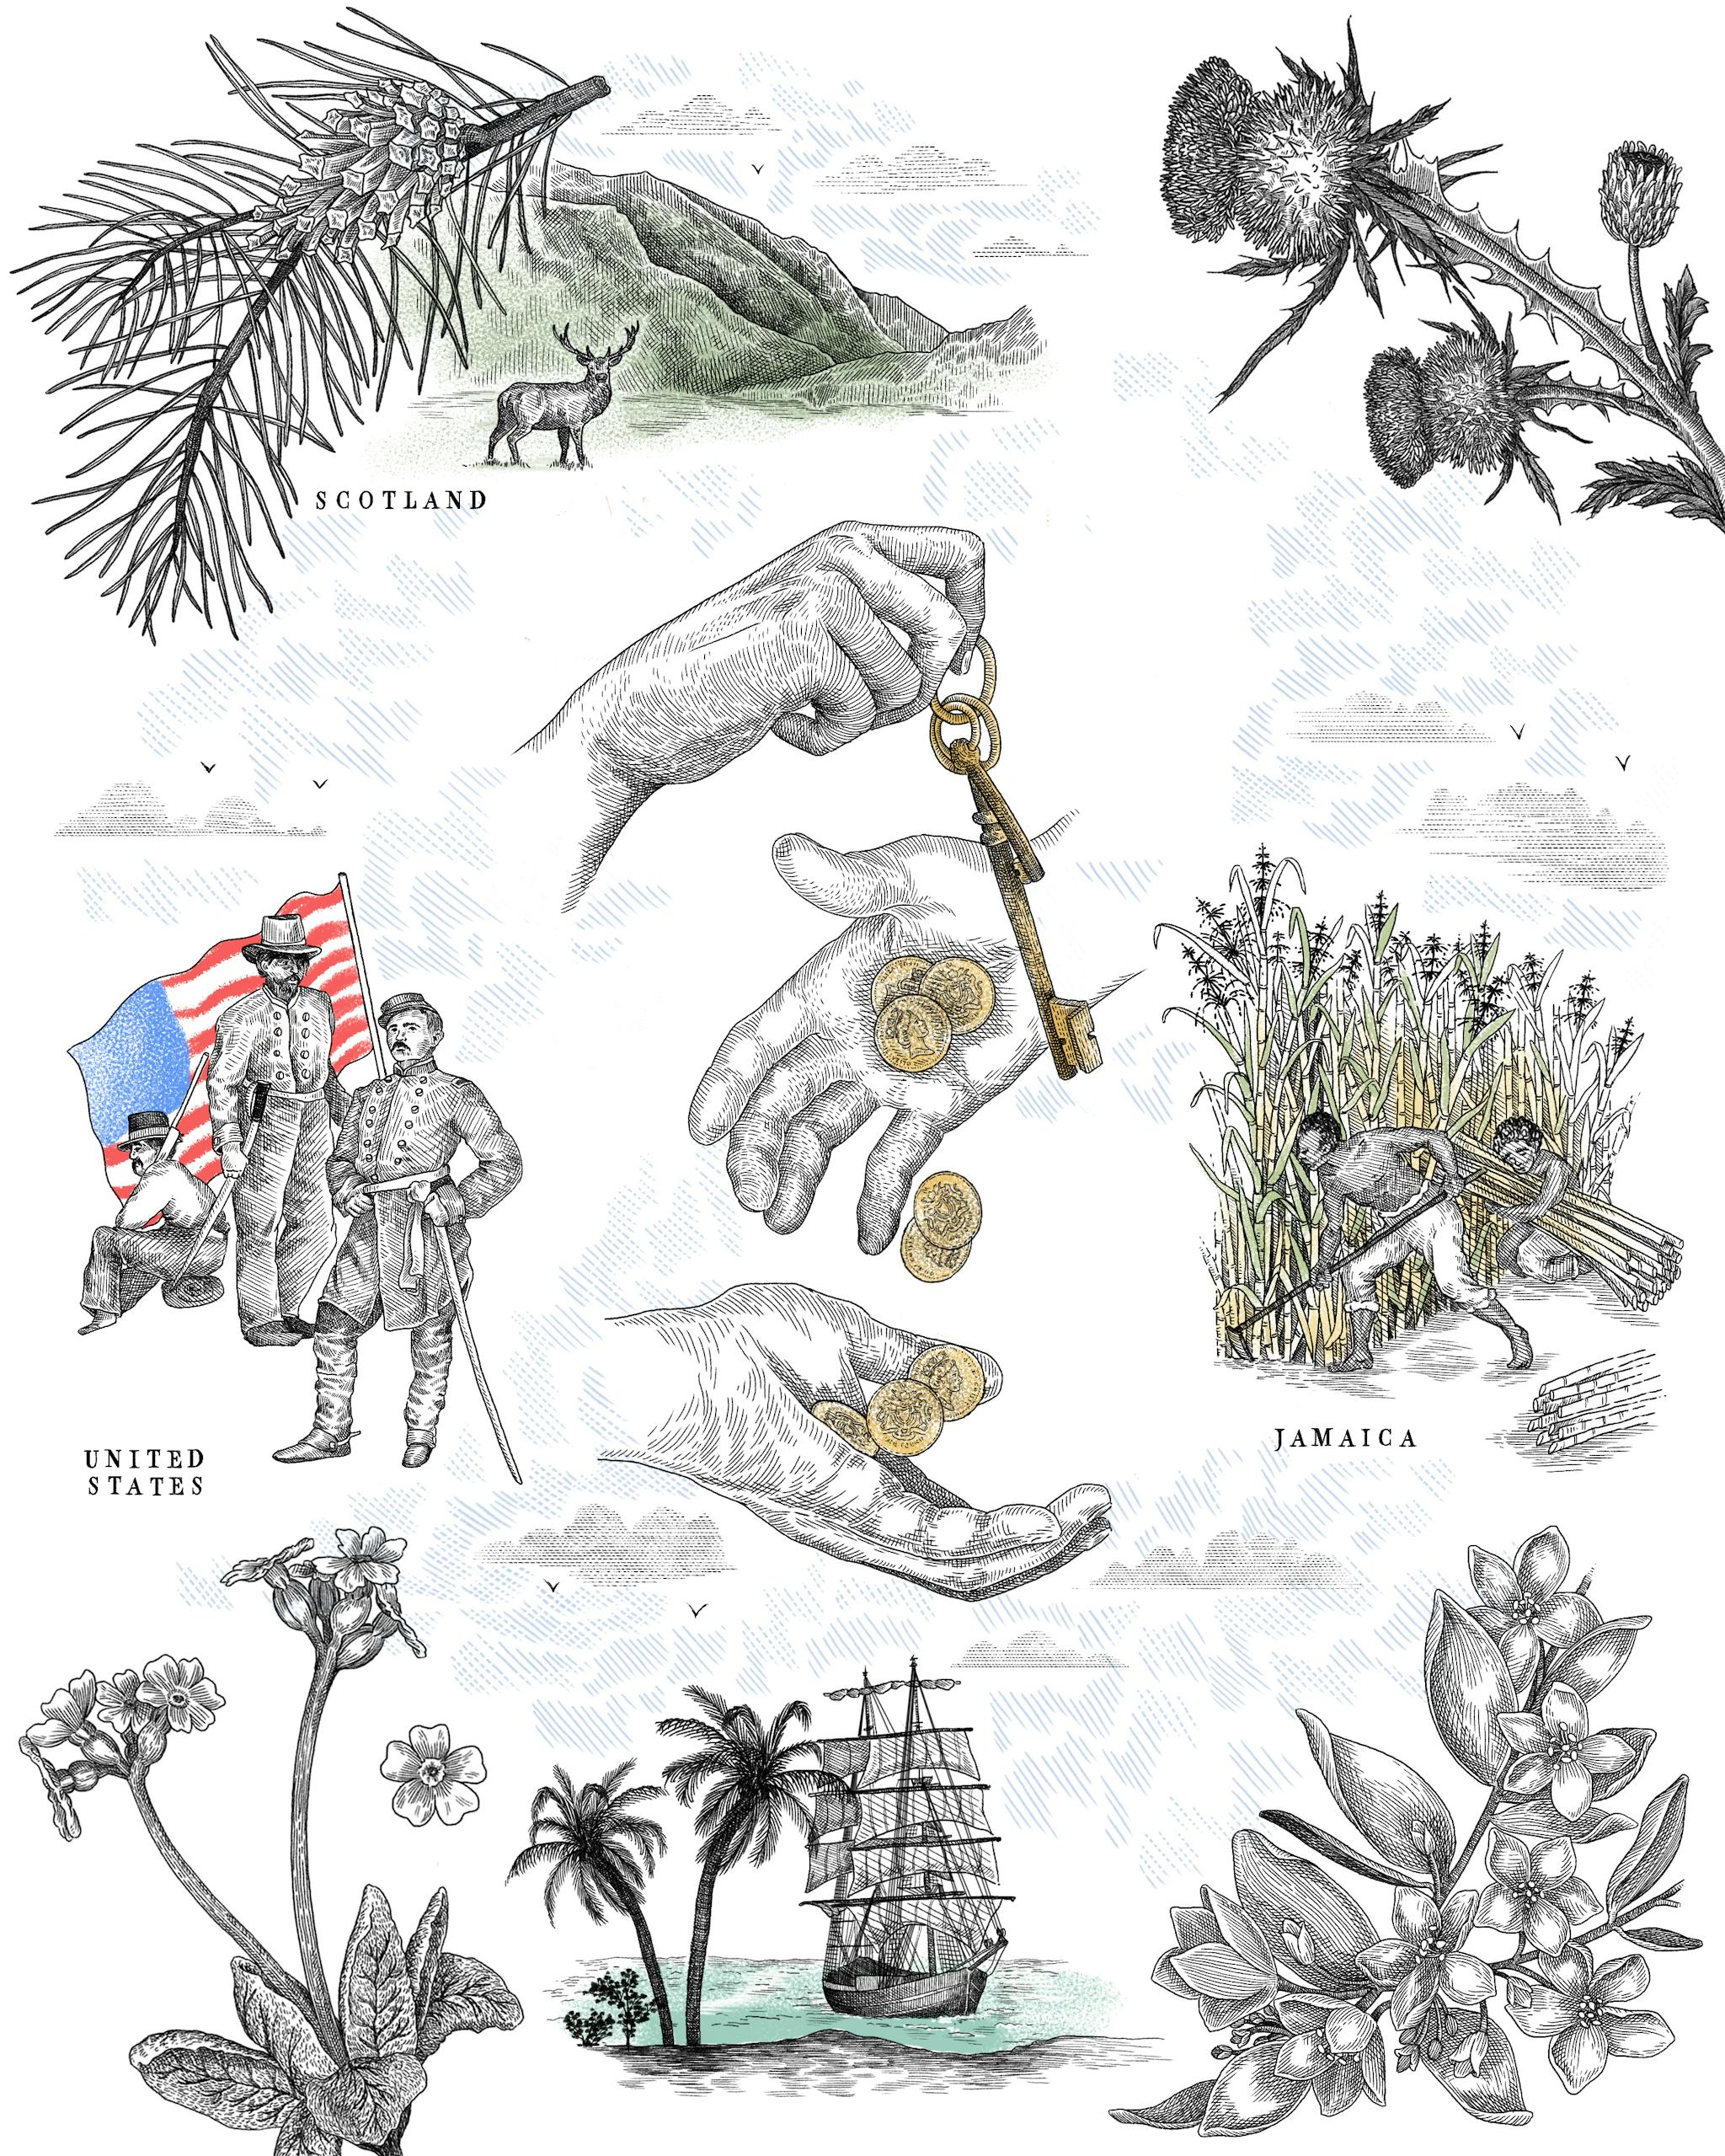 Composition de différentes illustrations en rapport avec le chateau de Skibo